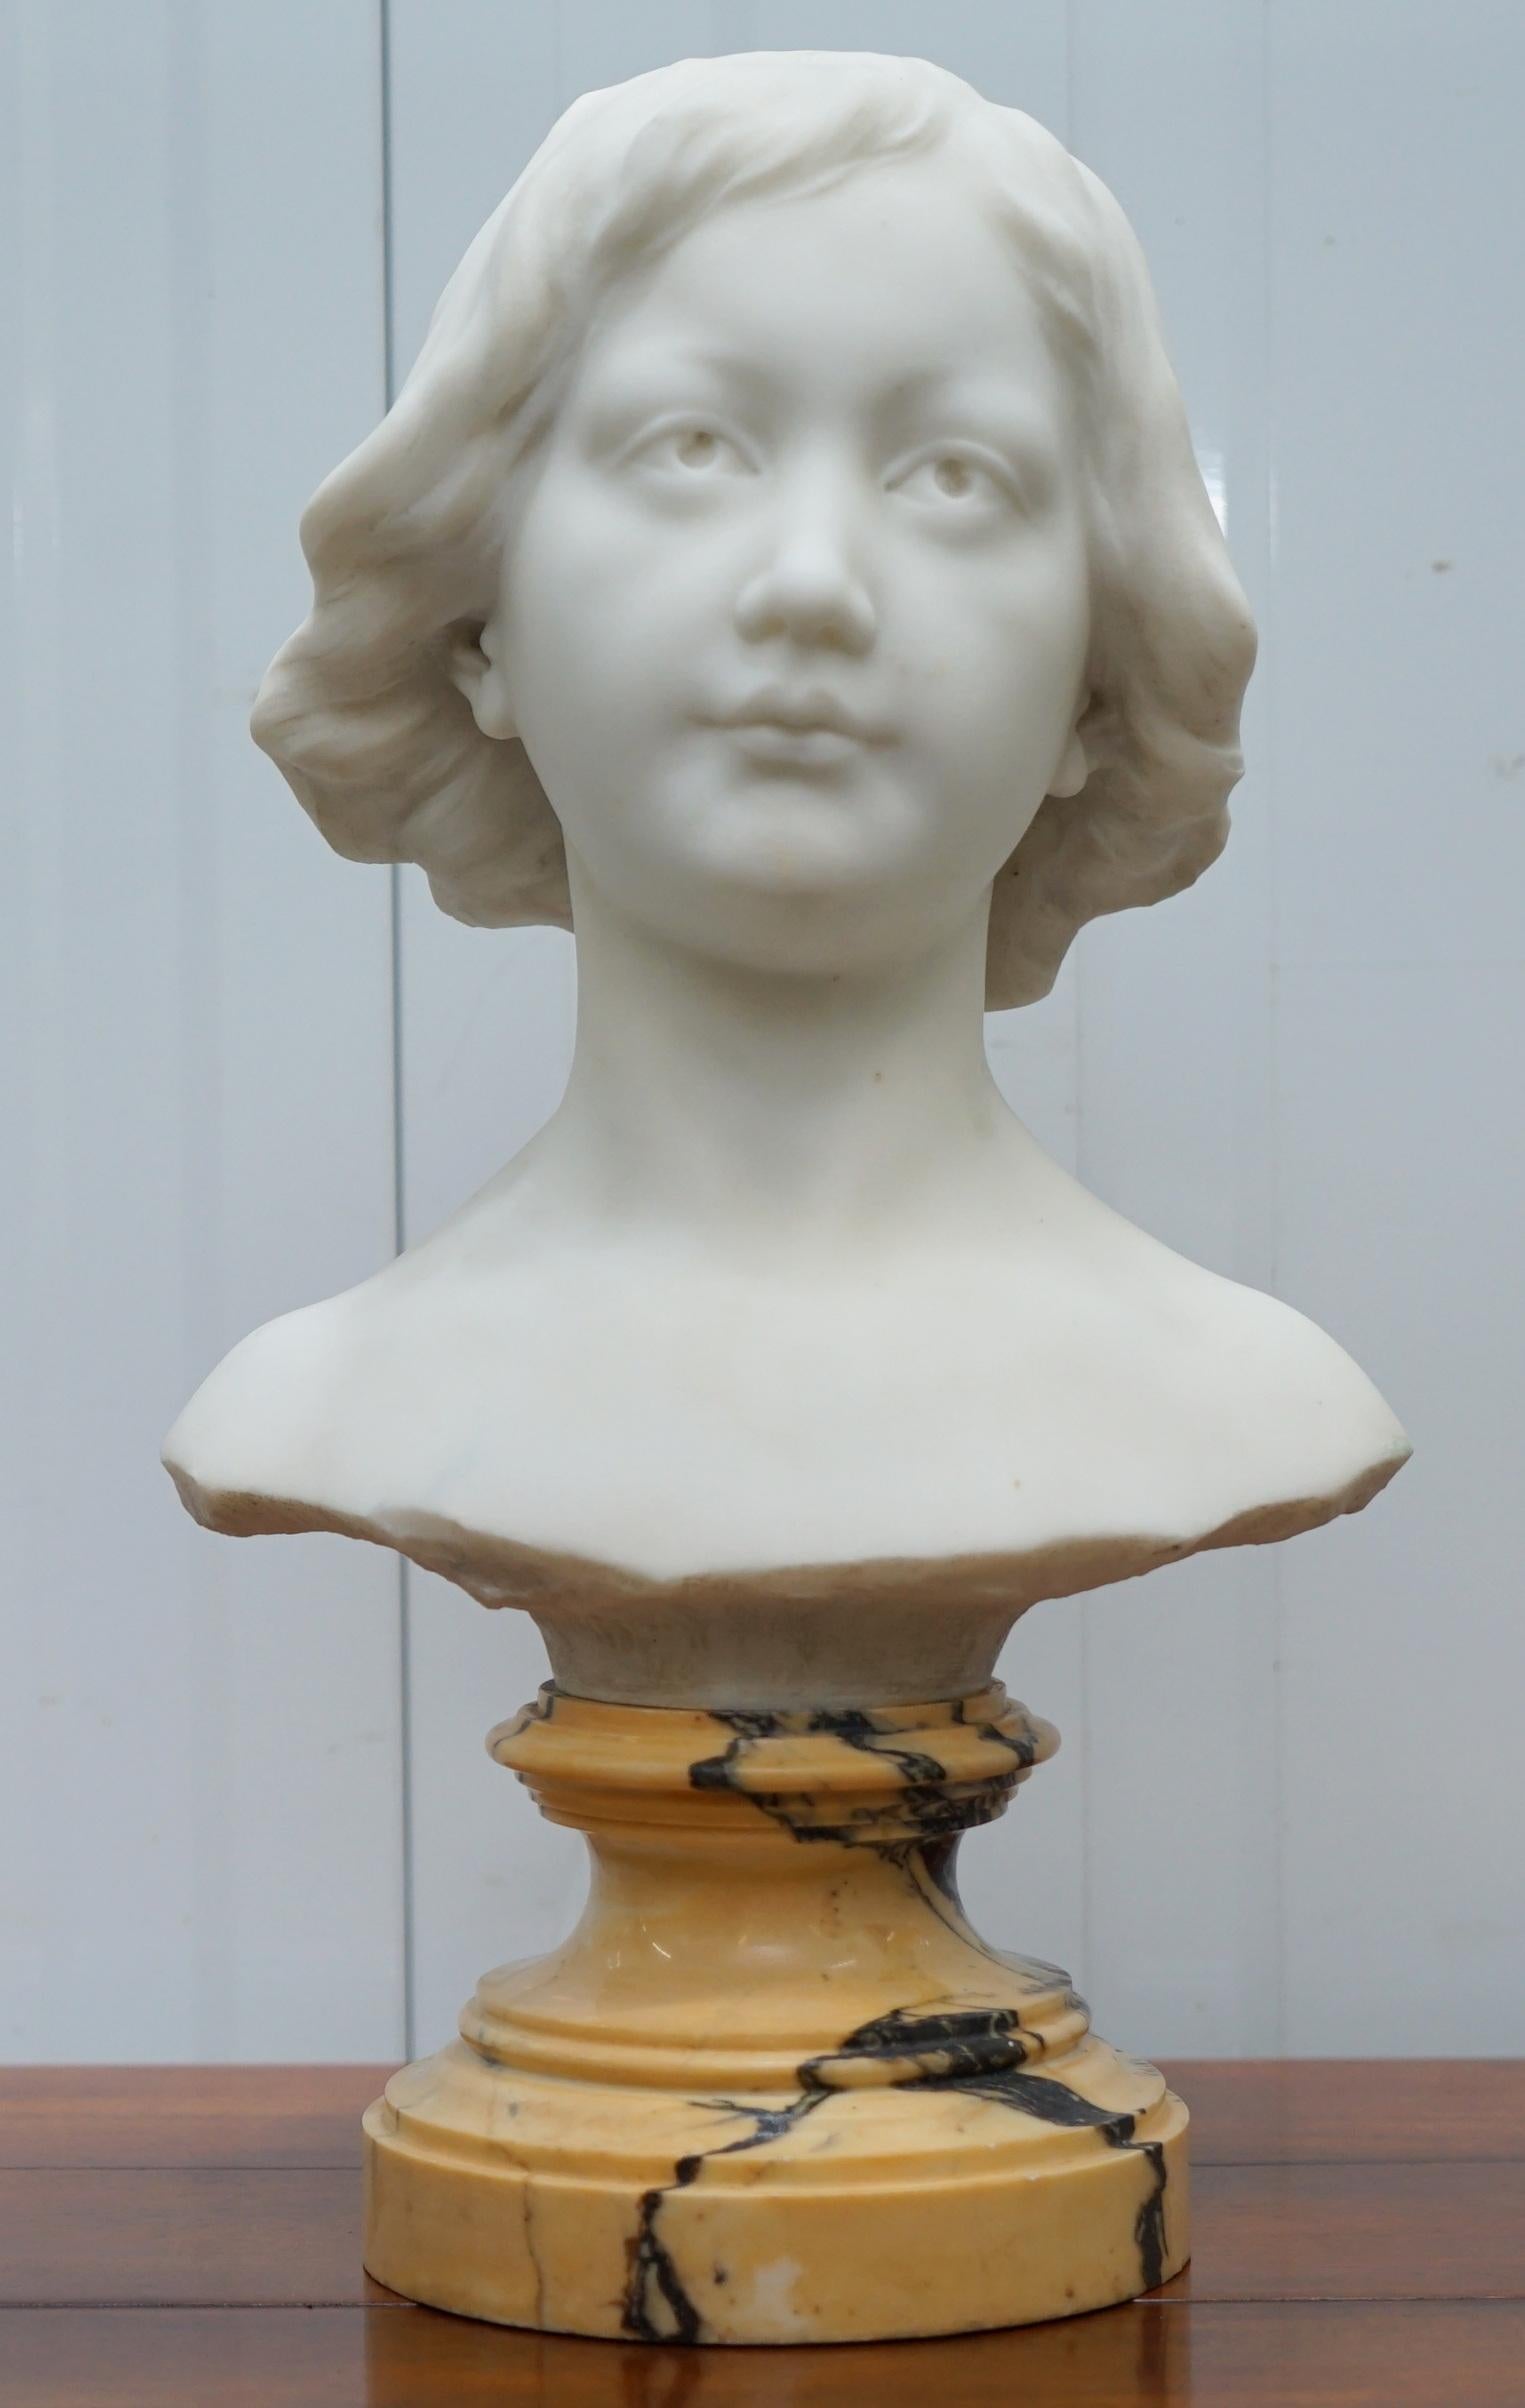 Nous sommes ravis d'offrir à la vente ce buste original rare et tout à fait exquis du 19ème siècle d'une jeune femme étonnante signée à l'arrière.

Cette jeune femme a un air de paix et de sérénité, sous tous les angles, je la trouve tout